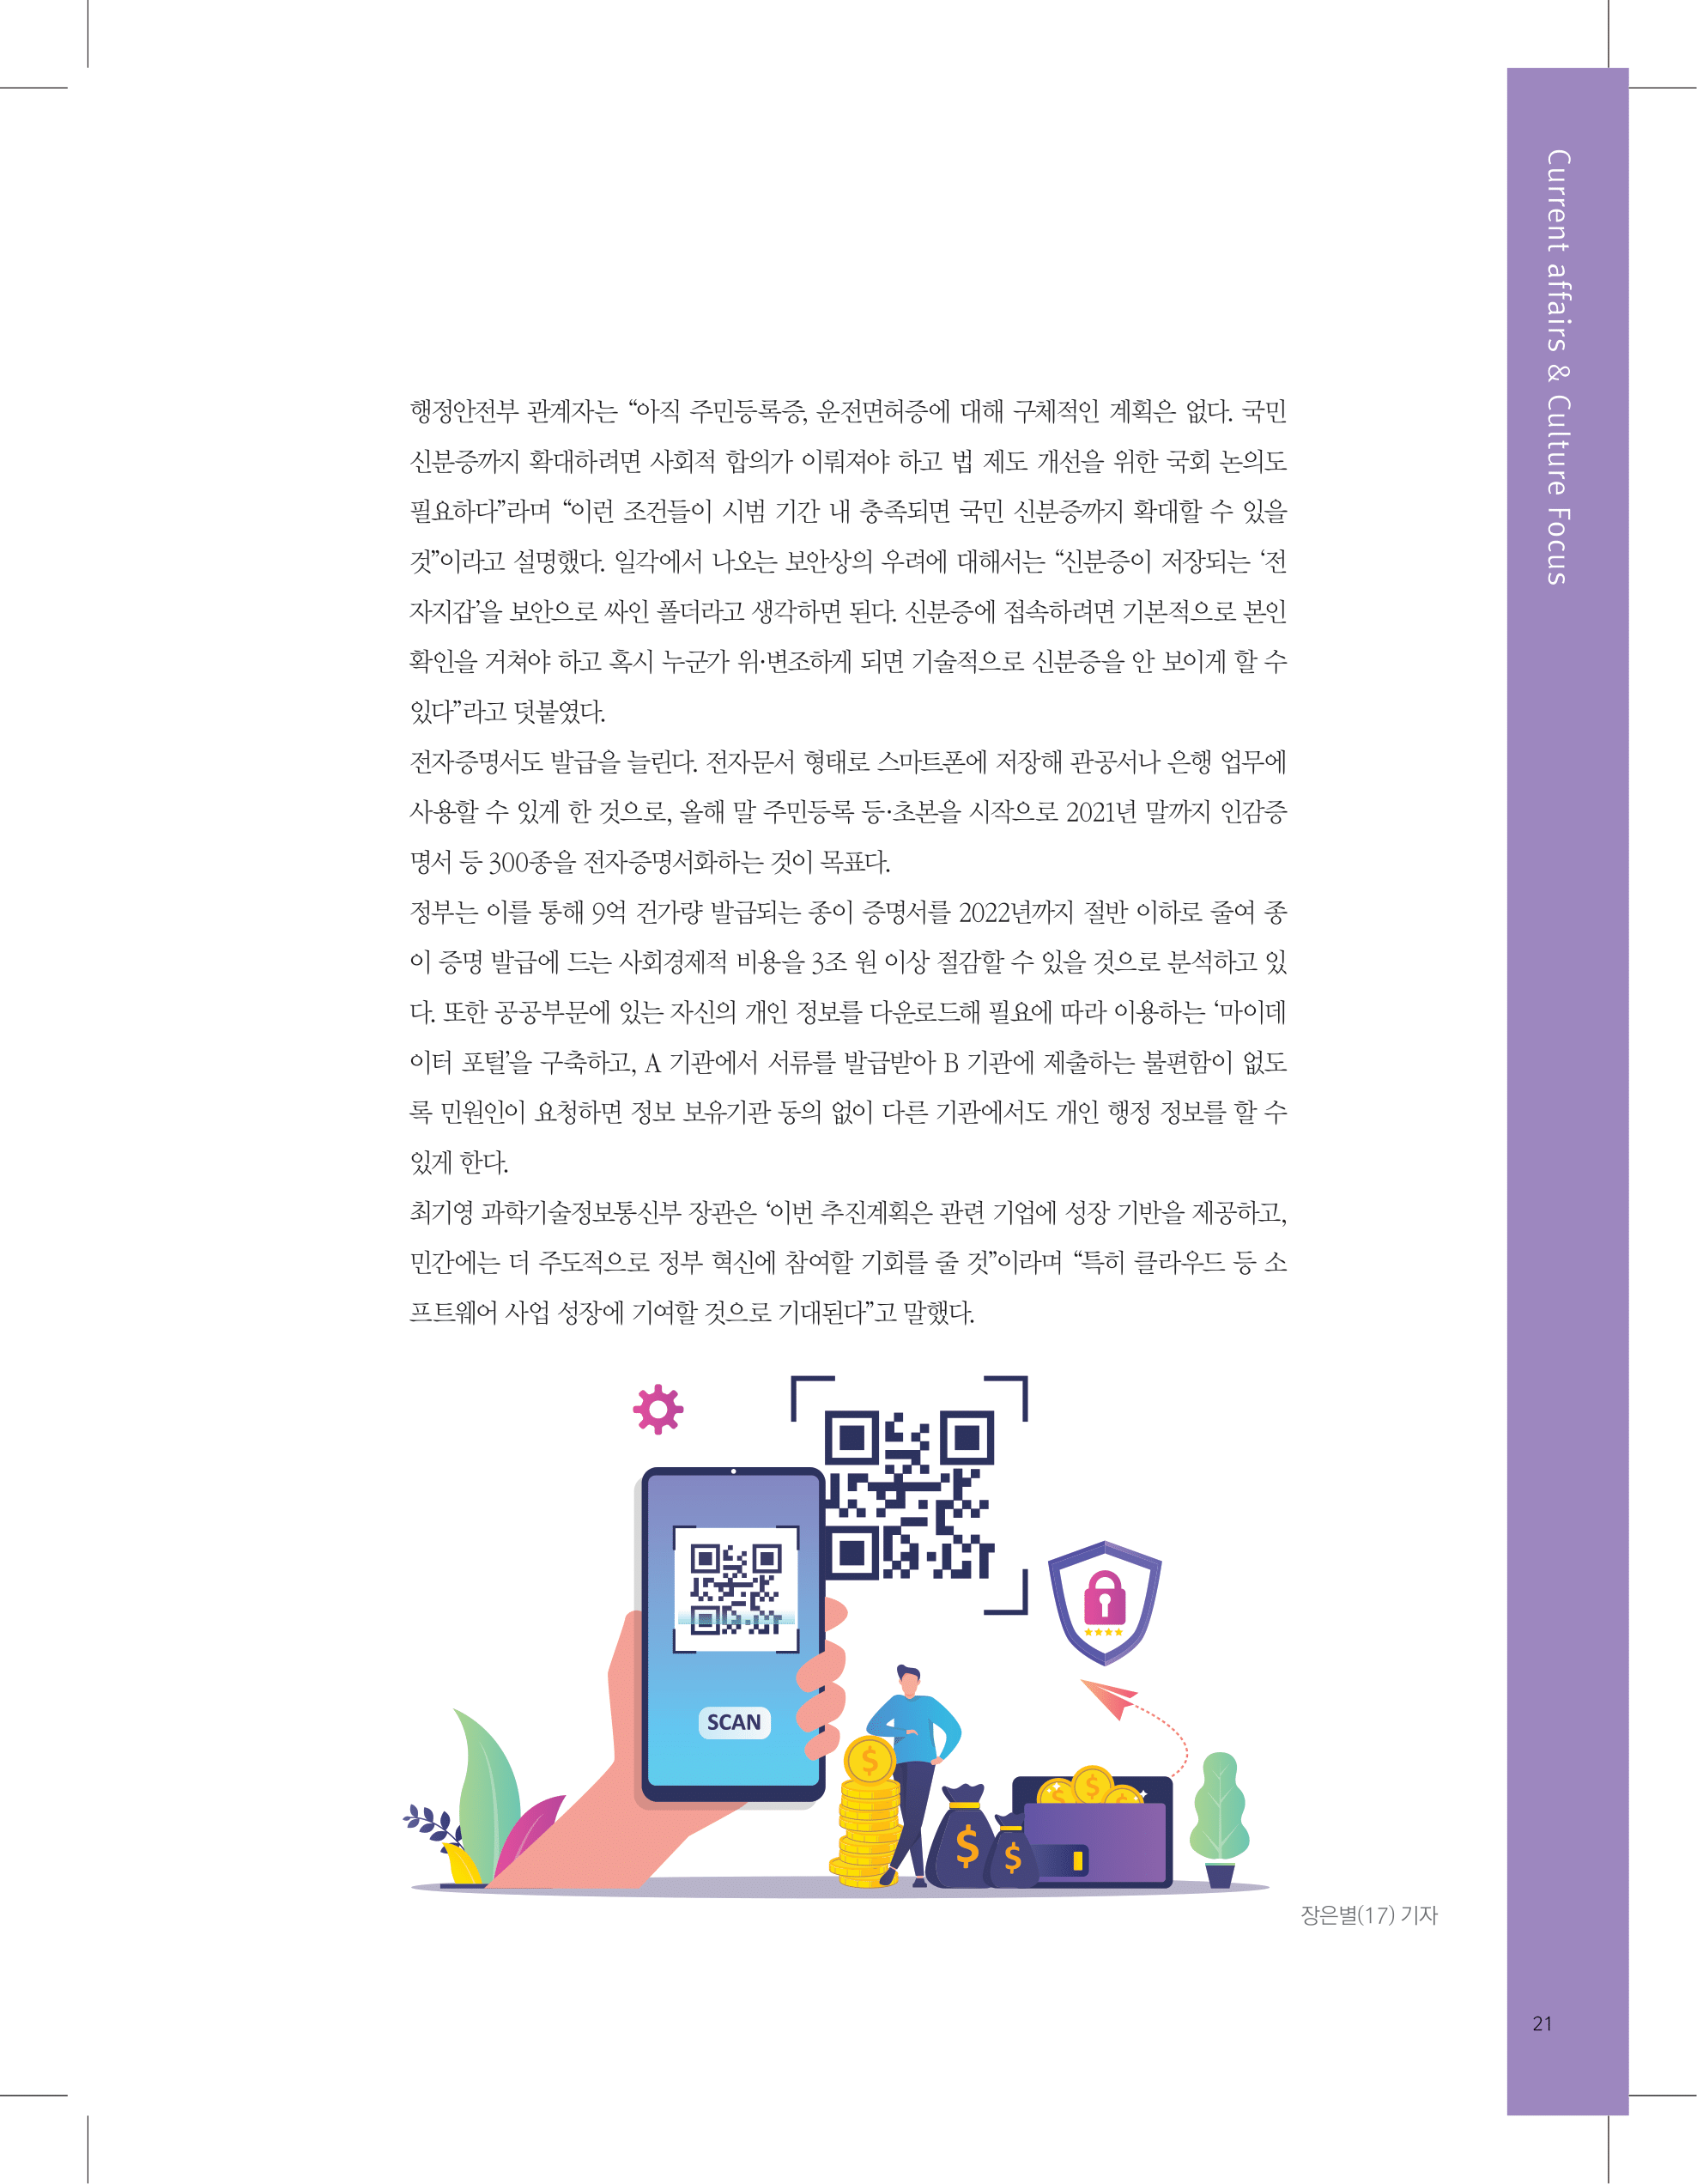 뜻새김 신문 74호 21